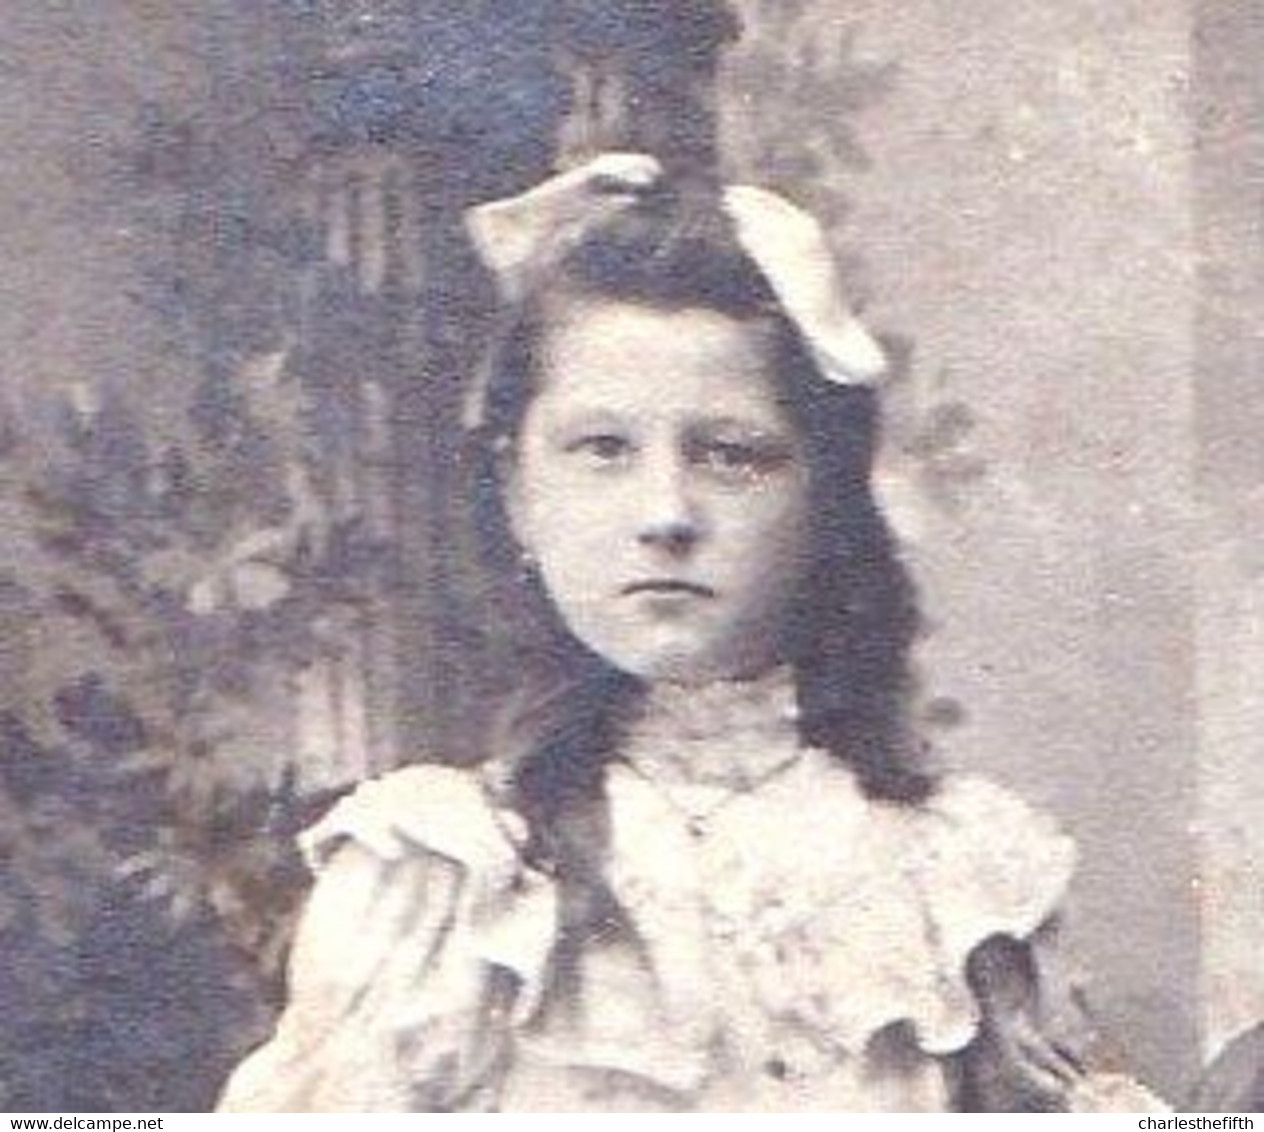 1800 VIEILLE PHOTO FAMILLE BONJEAN - SURREALISME - TRUQUEE ( Regardez La Tête De La Fille à Gauche ) MARGUERITE BONJEAN - Ancianas (antes De 1900)